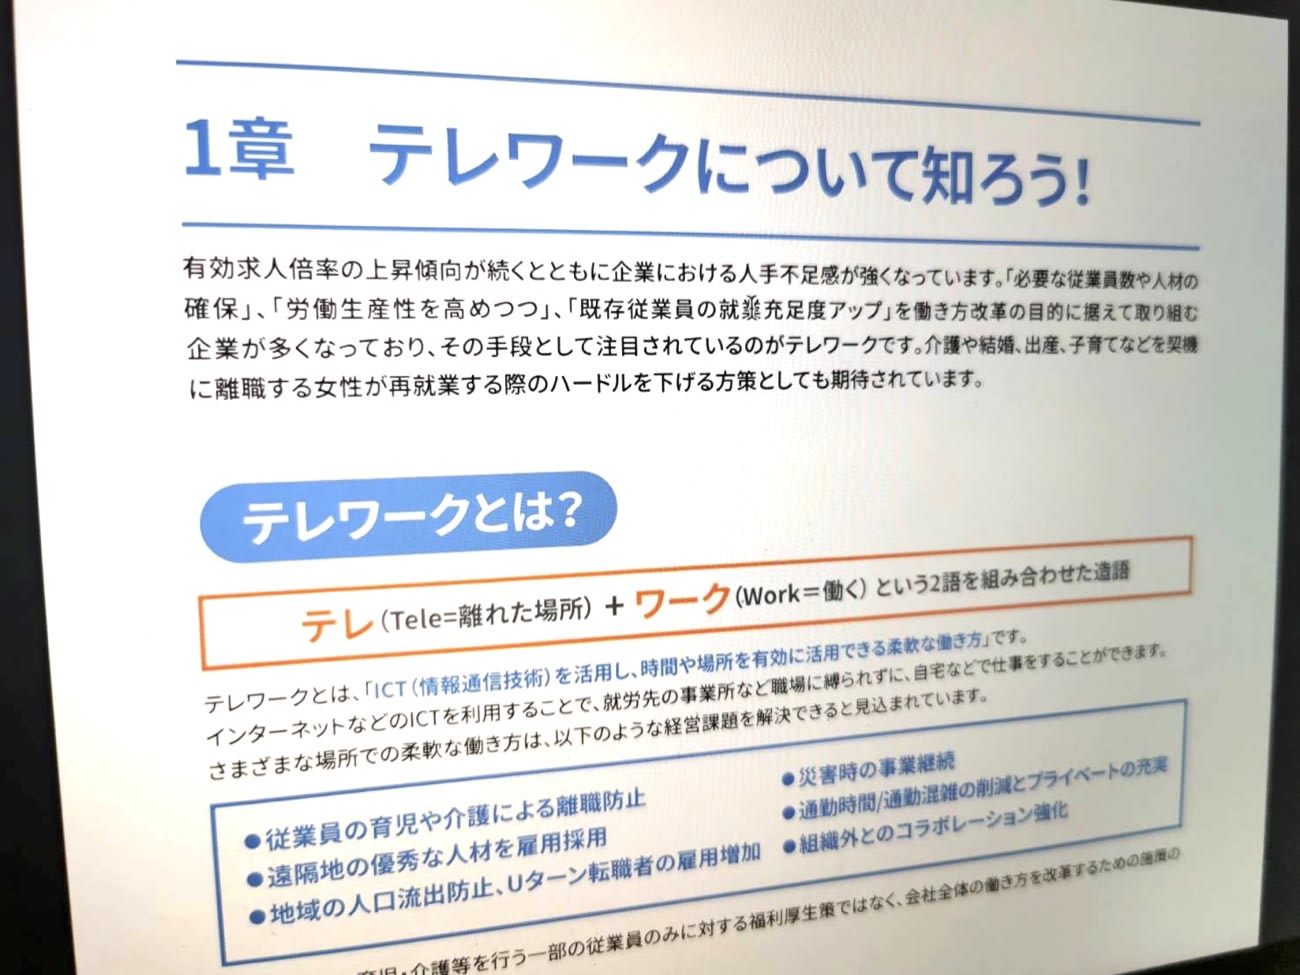 レノボ 全社テレワーク マニュアル無償公開 コロナ受けノウハウ共有 Engadget 日本版